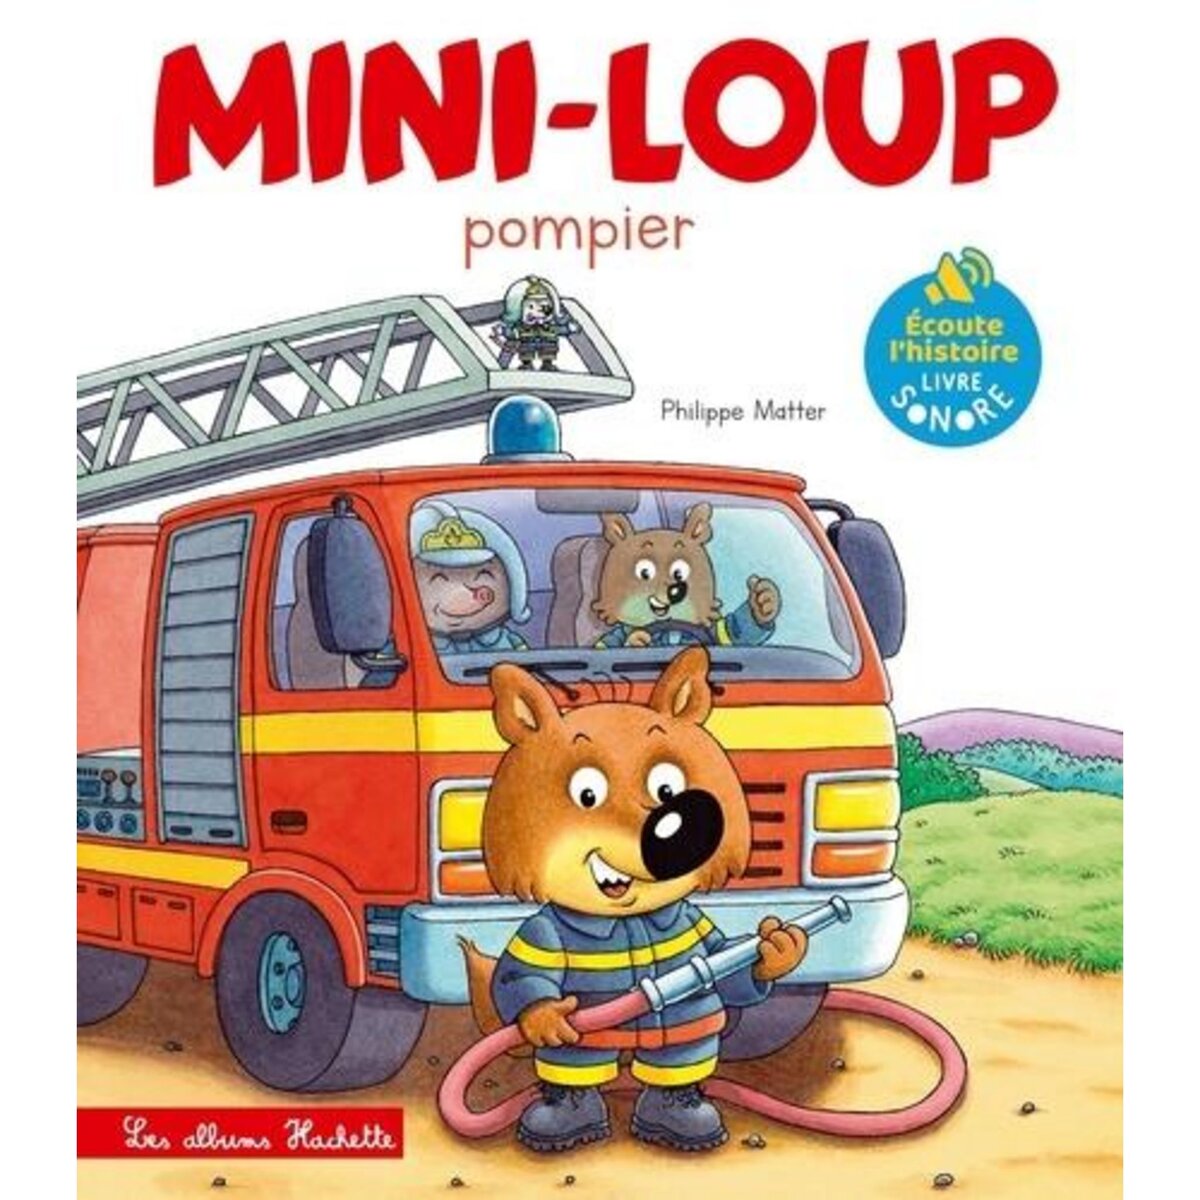  MINI-LOUP : MINI-LOUP POMPIER, Matter Philippe